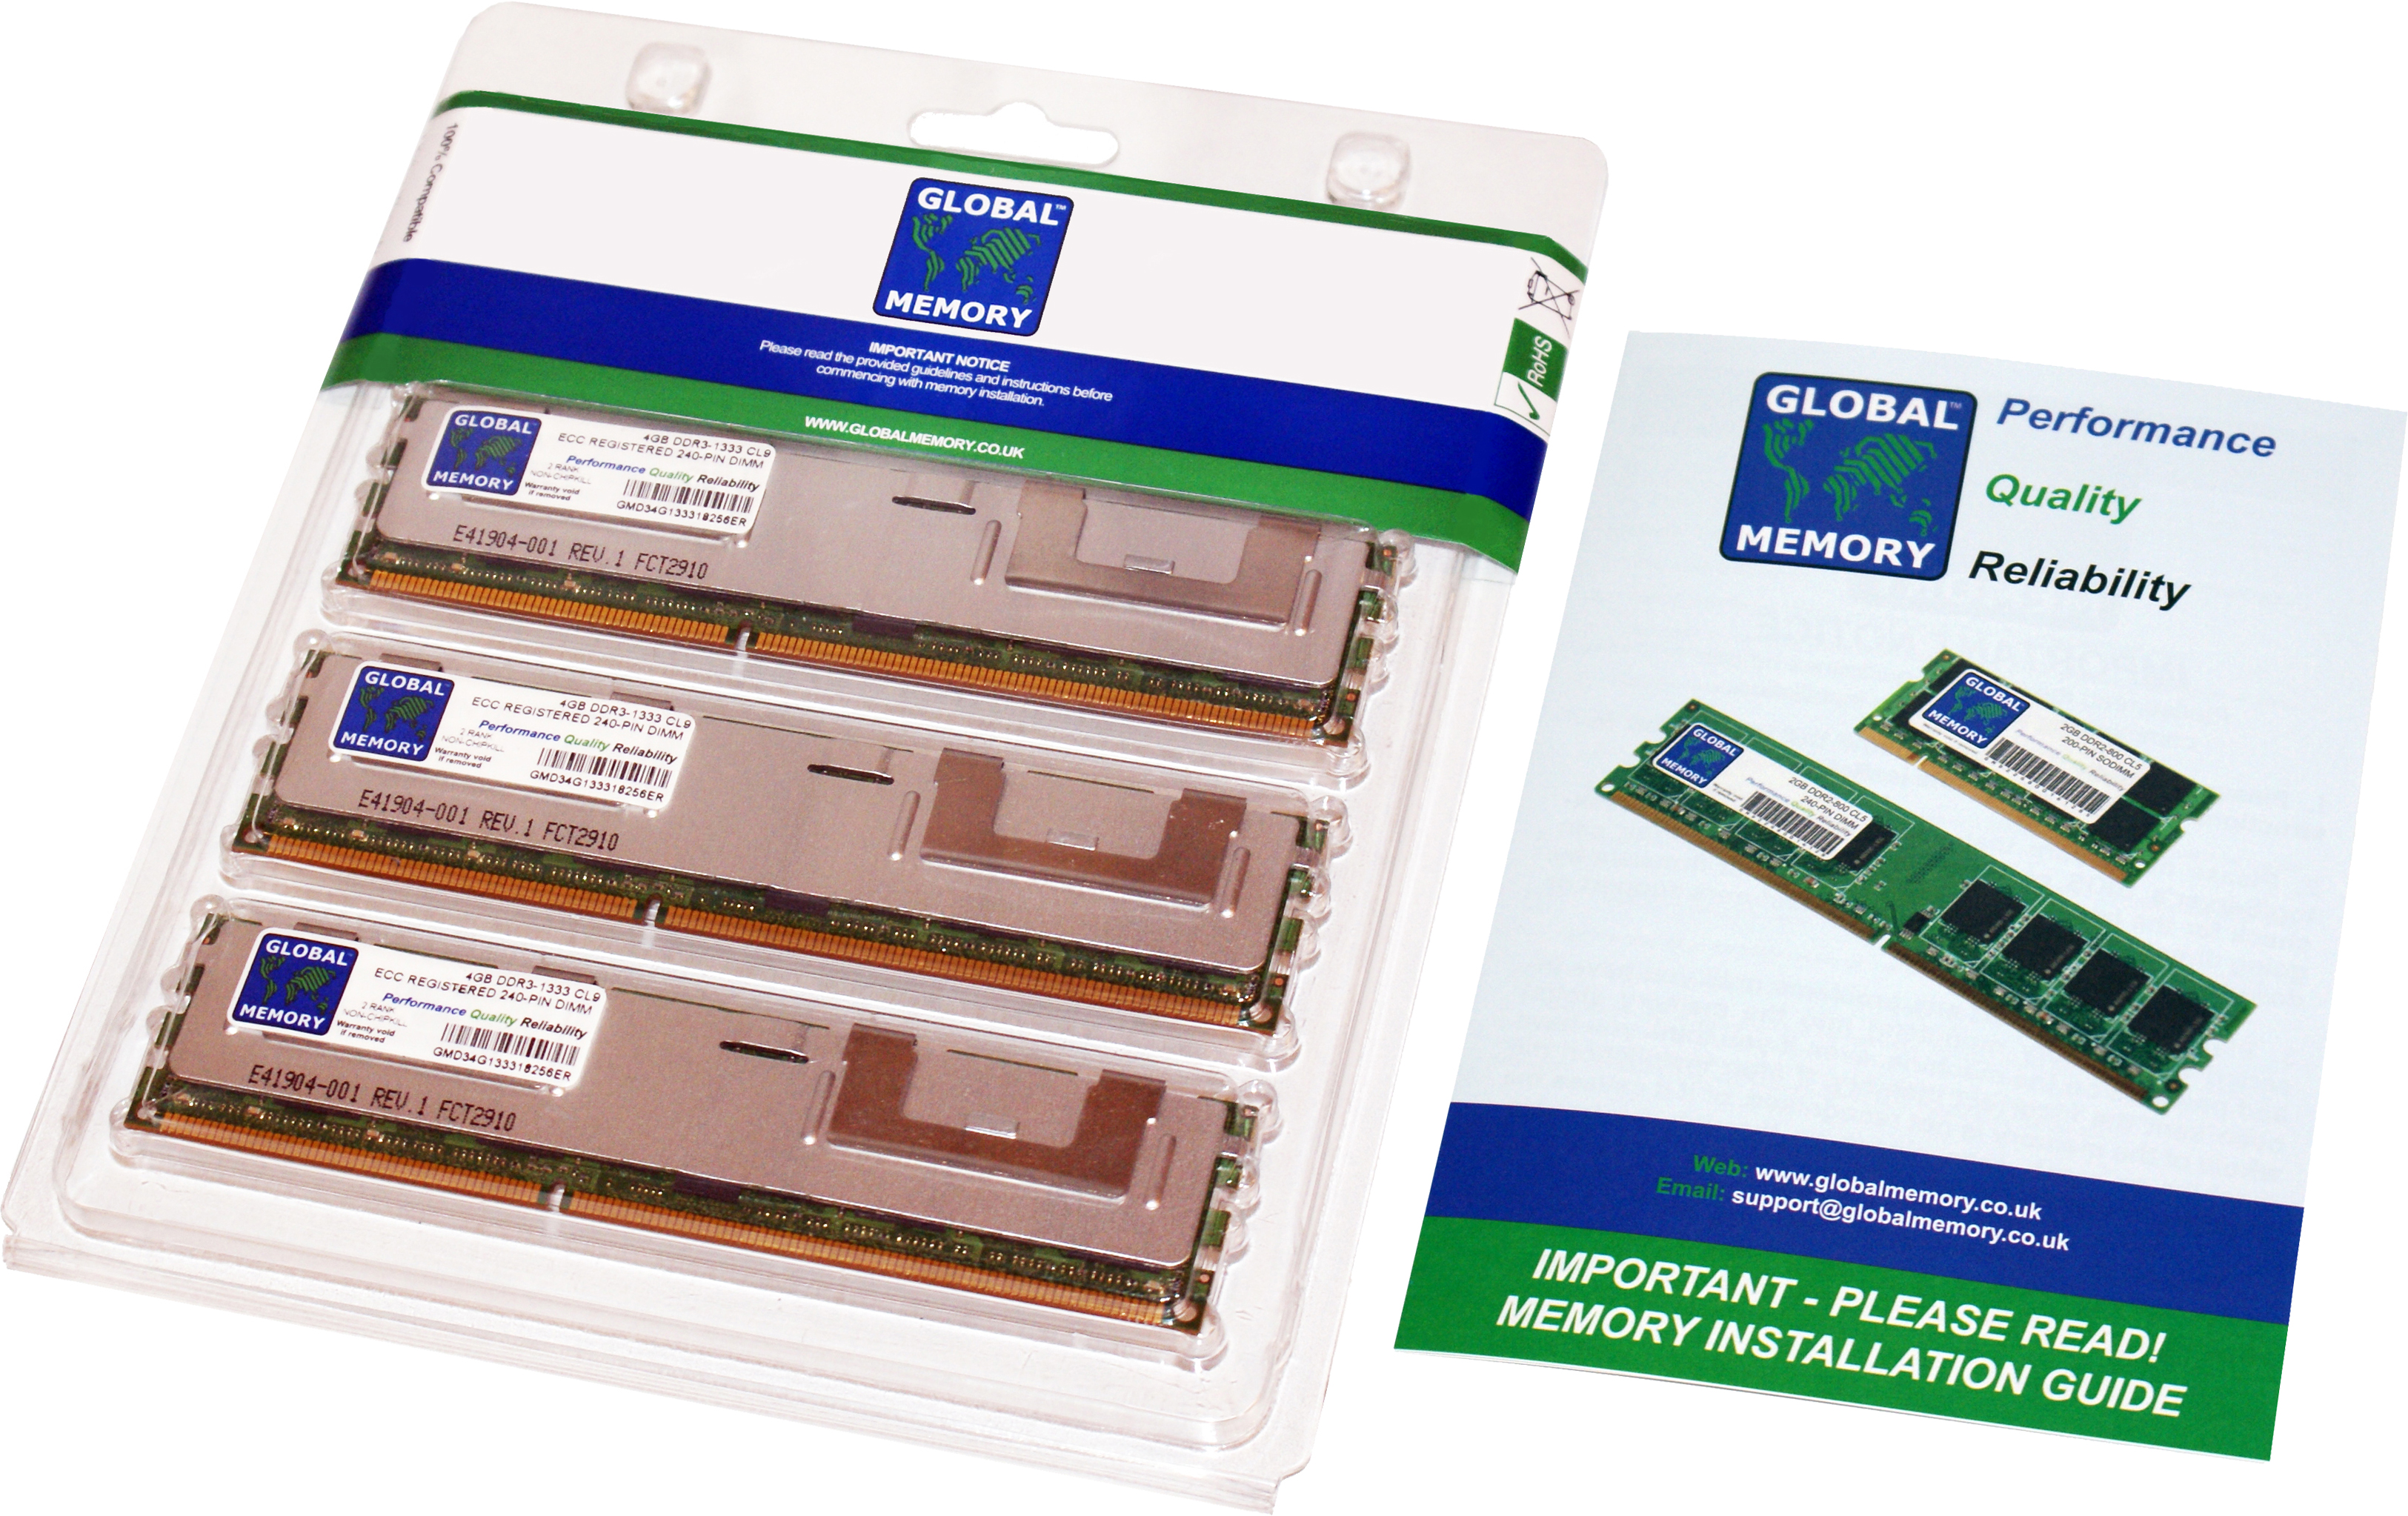 48GB (3 x 16GB) DDR3 1066MHz PC3-8500 240-PIN ECC REGISTERED DIMM (RDIMM) MEMORY RAM KIT FOR HEWLETT-PACKARD SERVERS/WORKSTATIONS (12 RANK KIT NON-CHIPKILL)